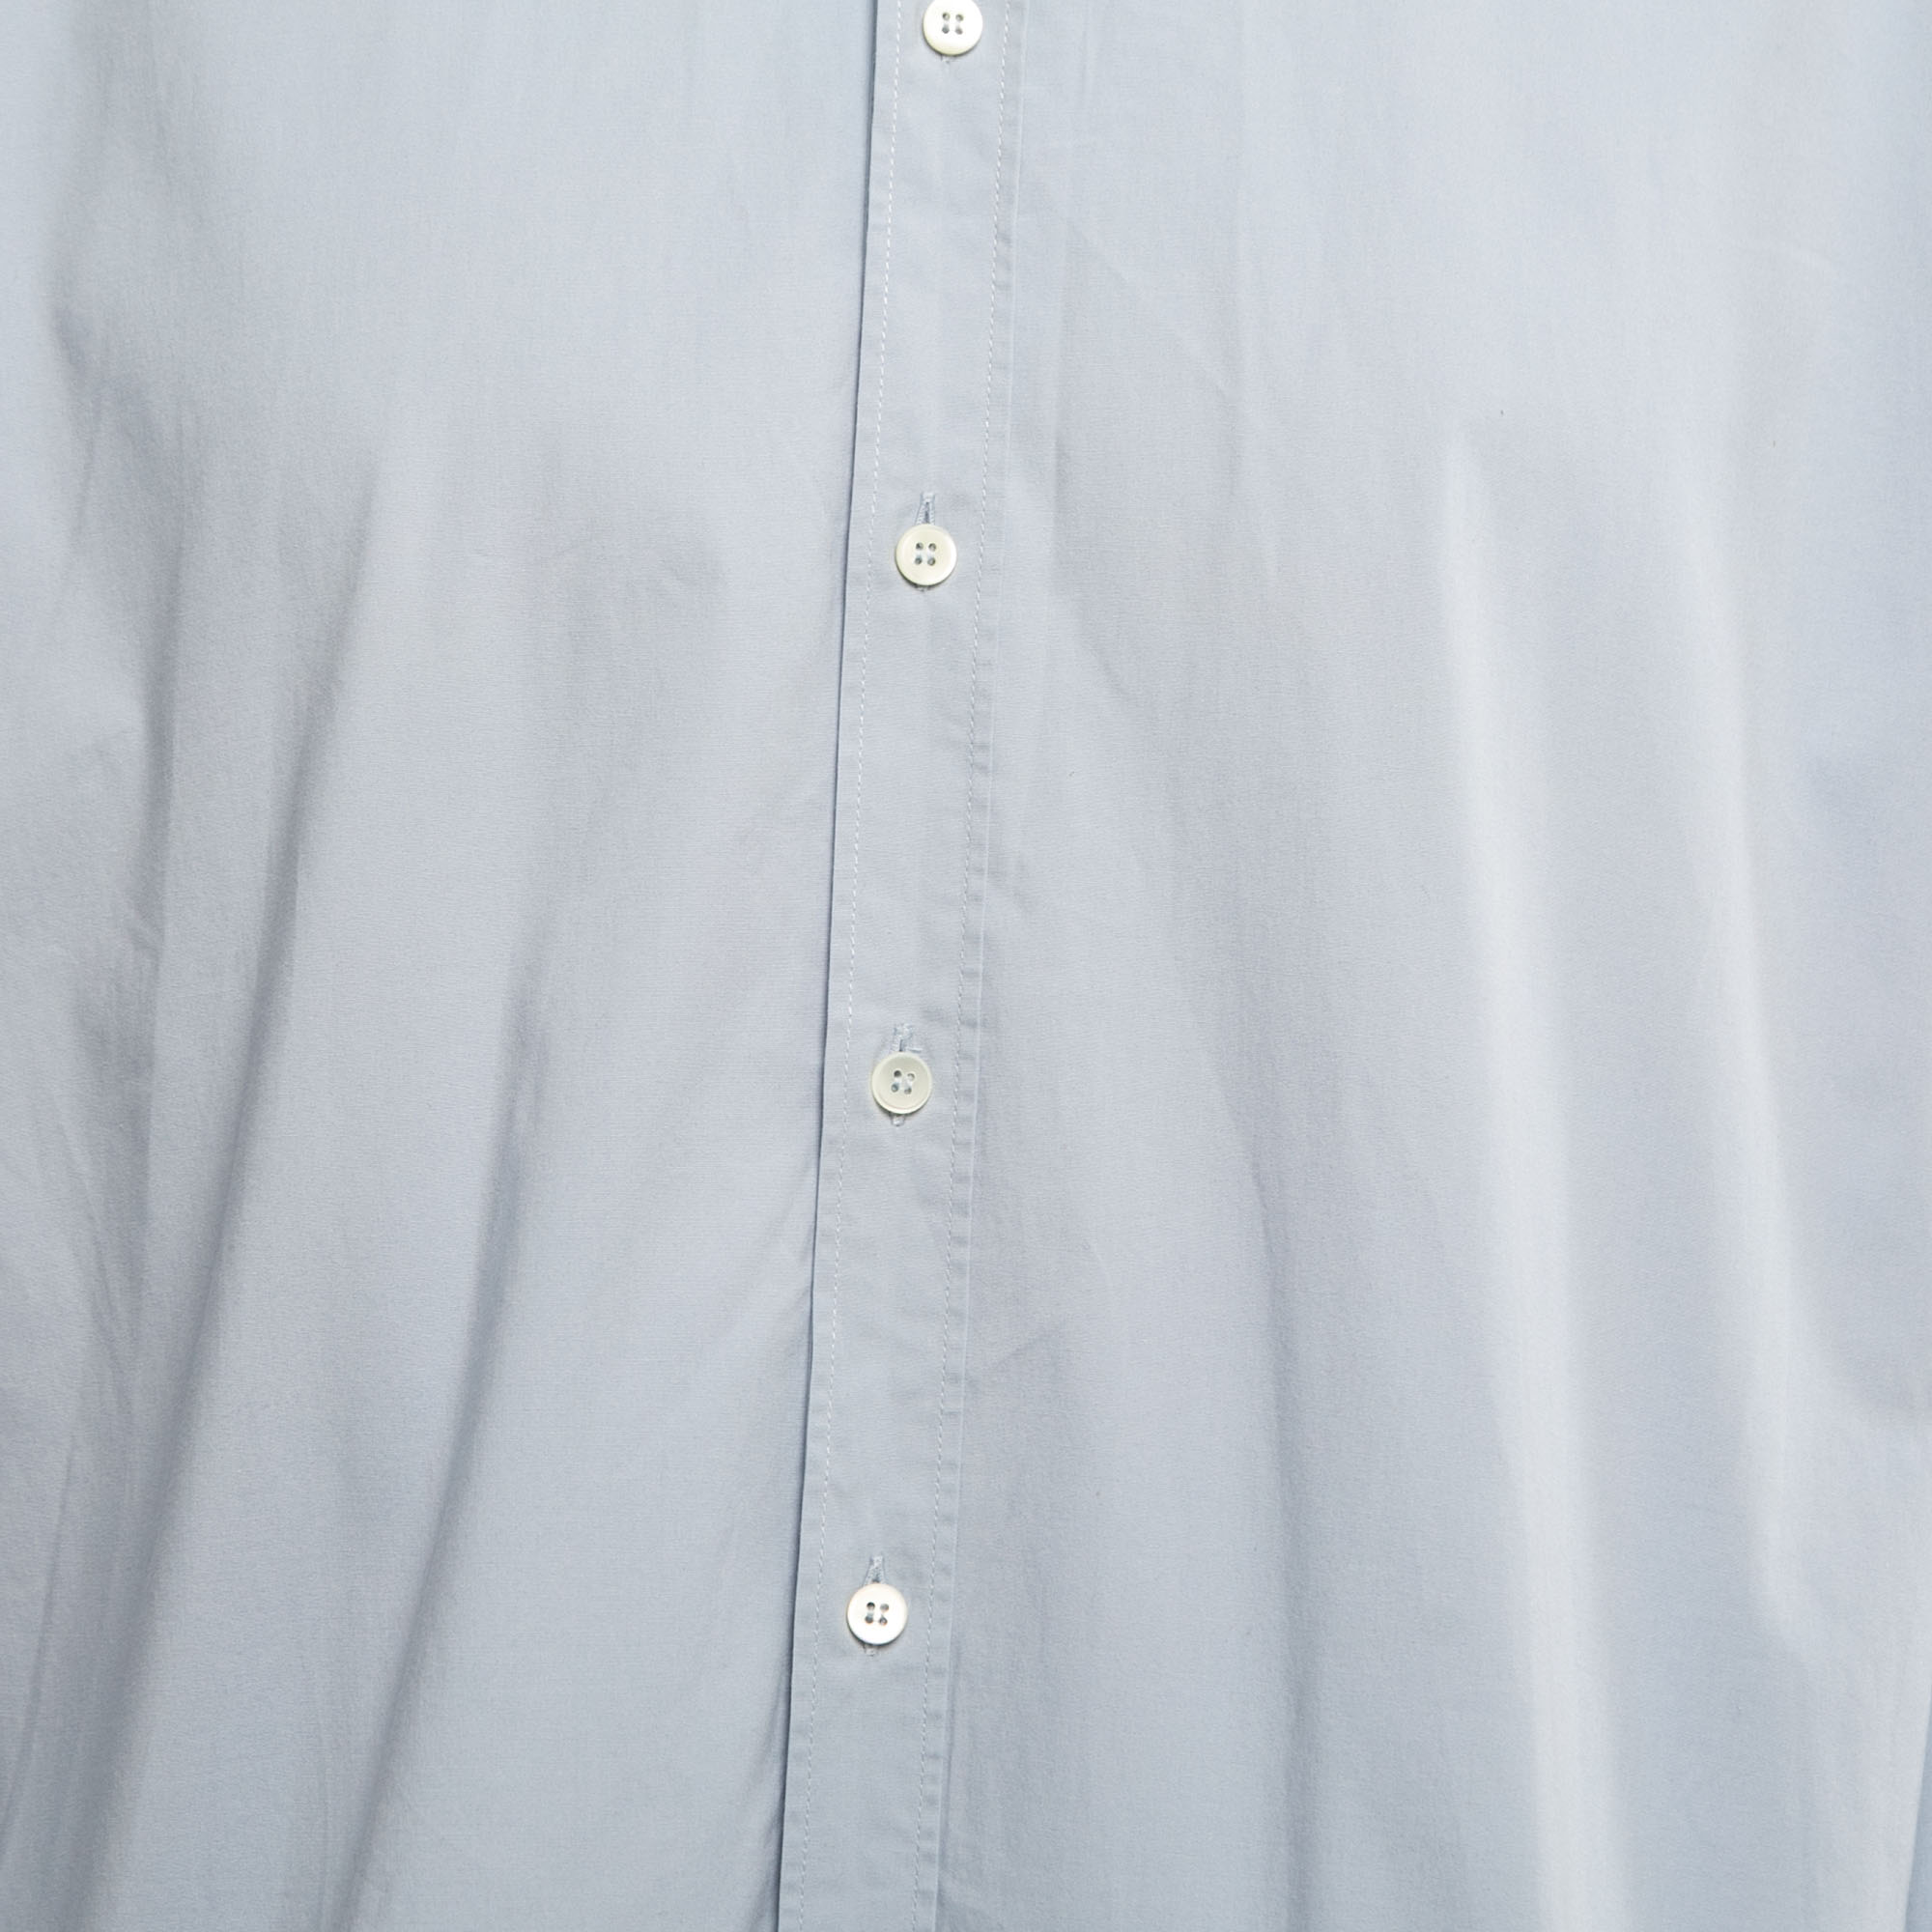 Dolce & Gabbana Blue Cotton Gold Fit Long Sleeve Shirt 4XL